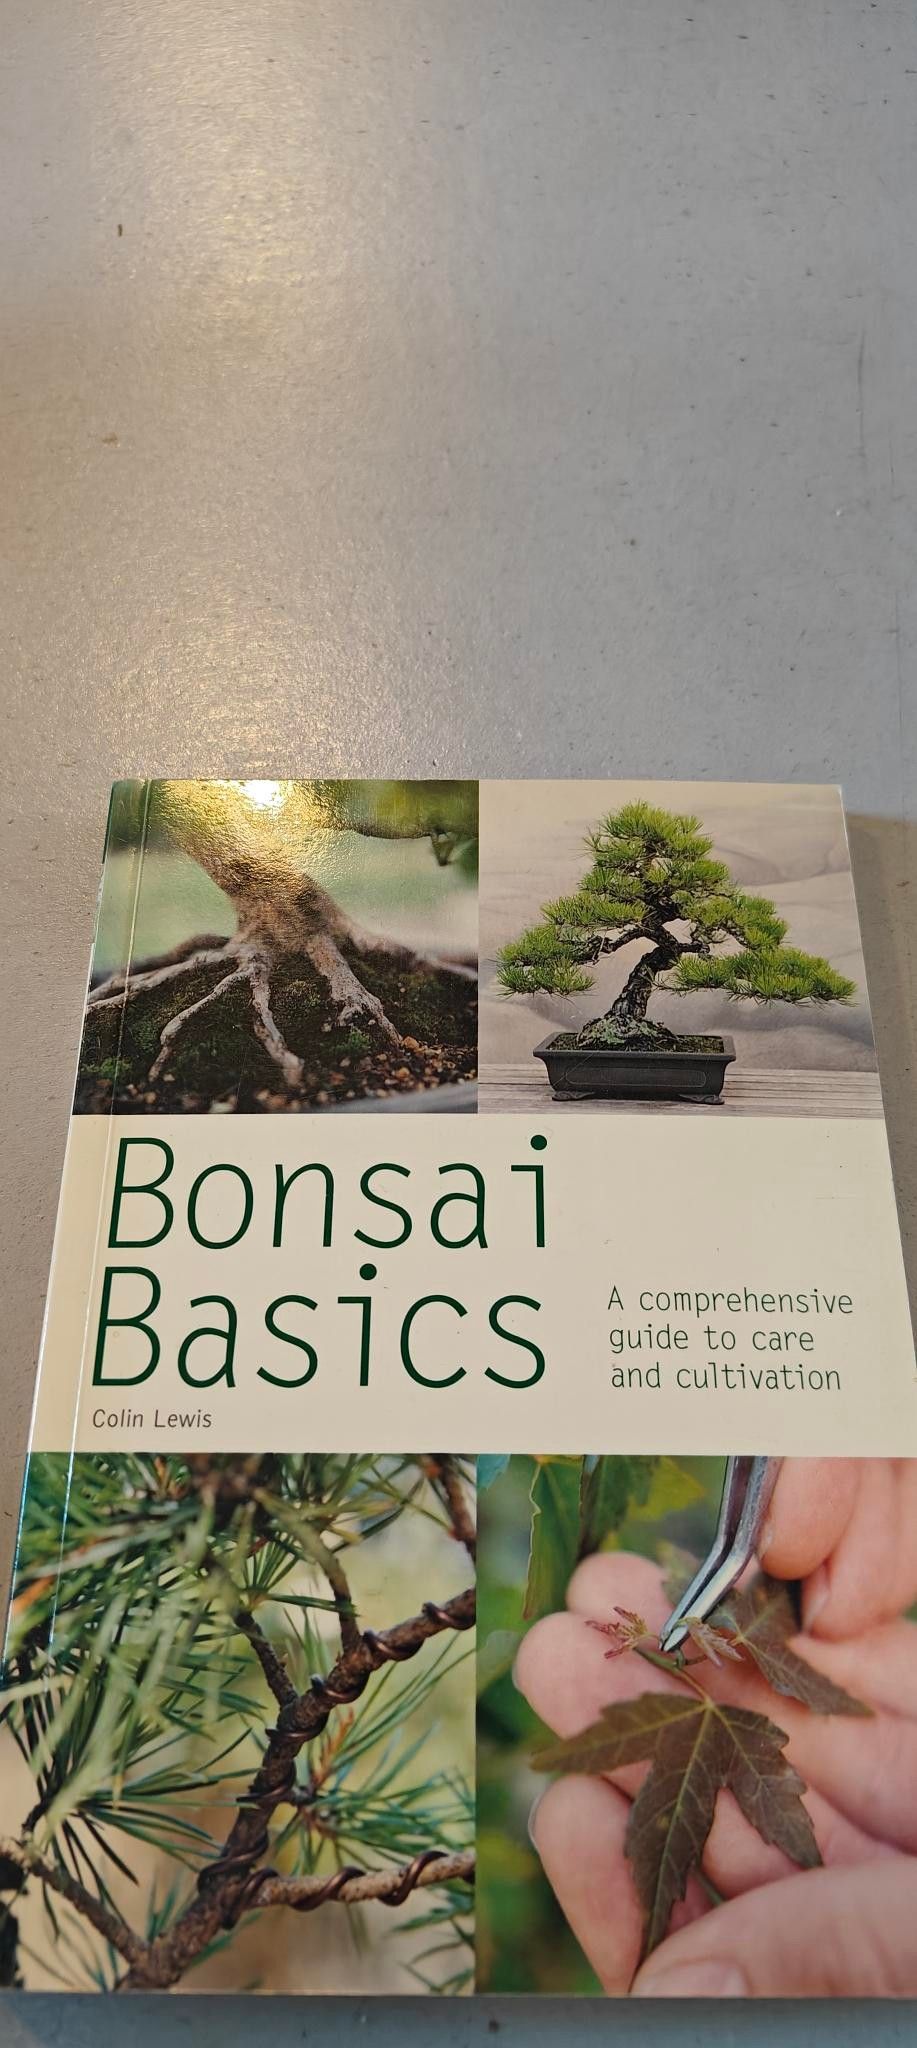 Bonsai puiden hoito ja kasvatus kirja book